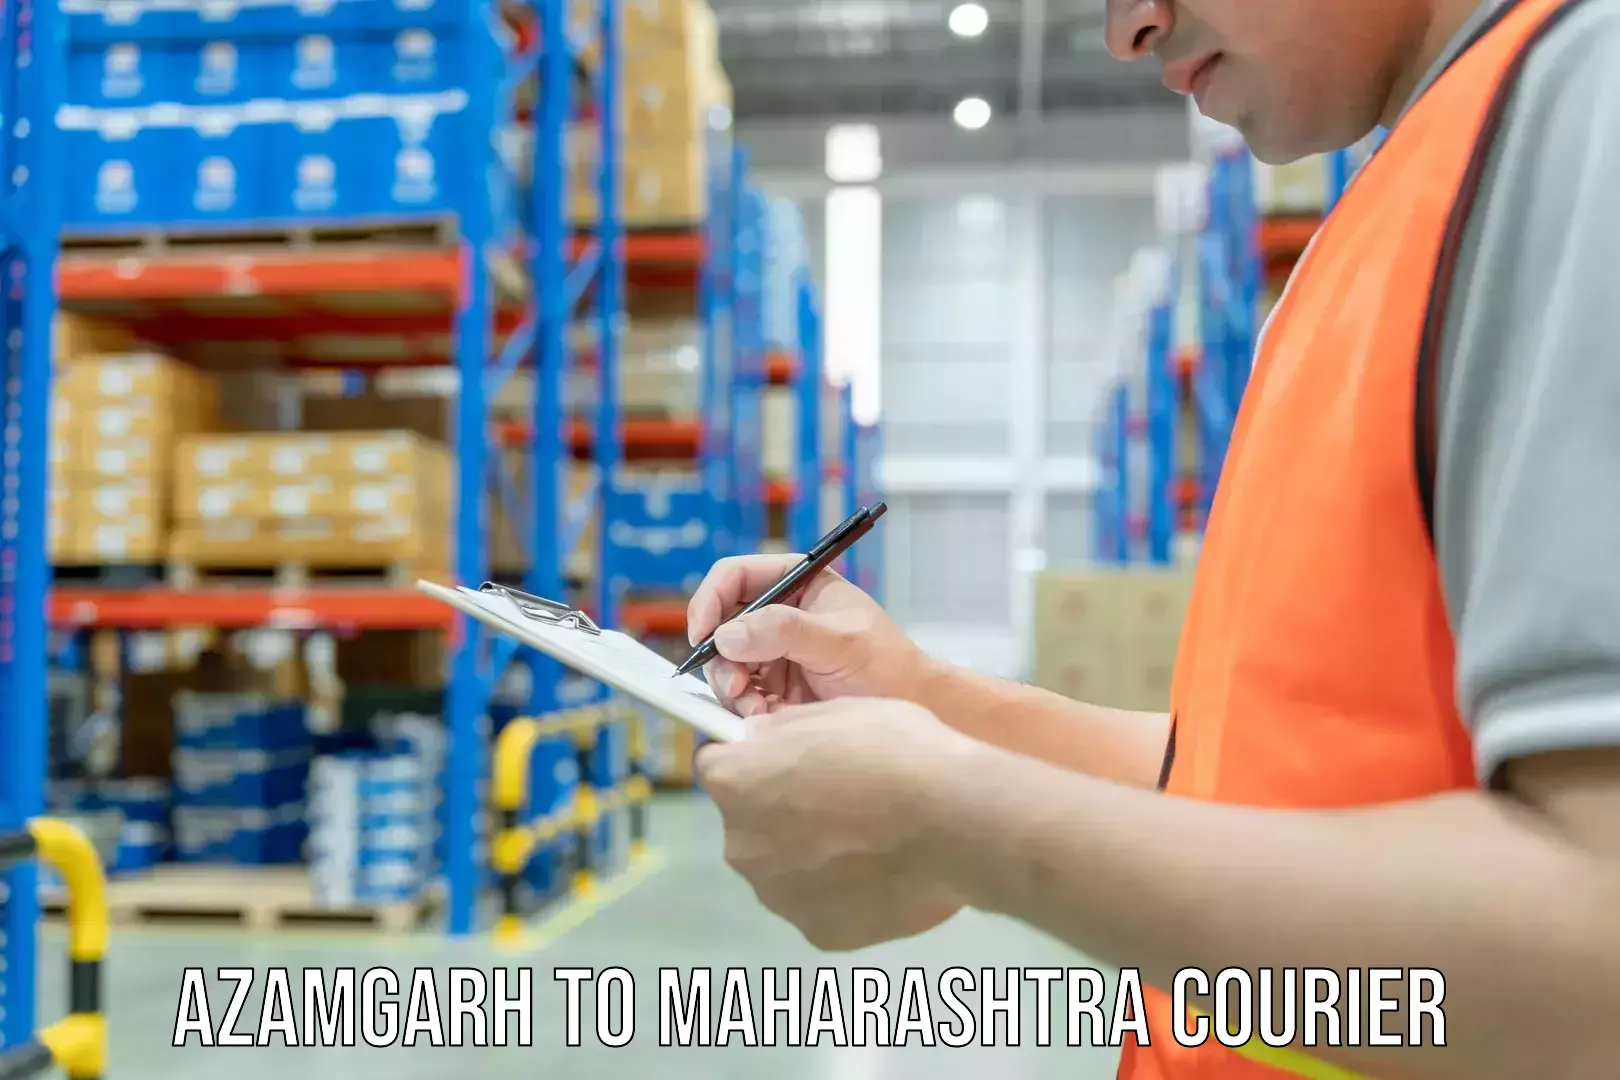 High-capacity parcel service Azamgarh to Maharashtra